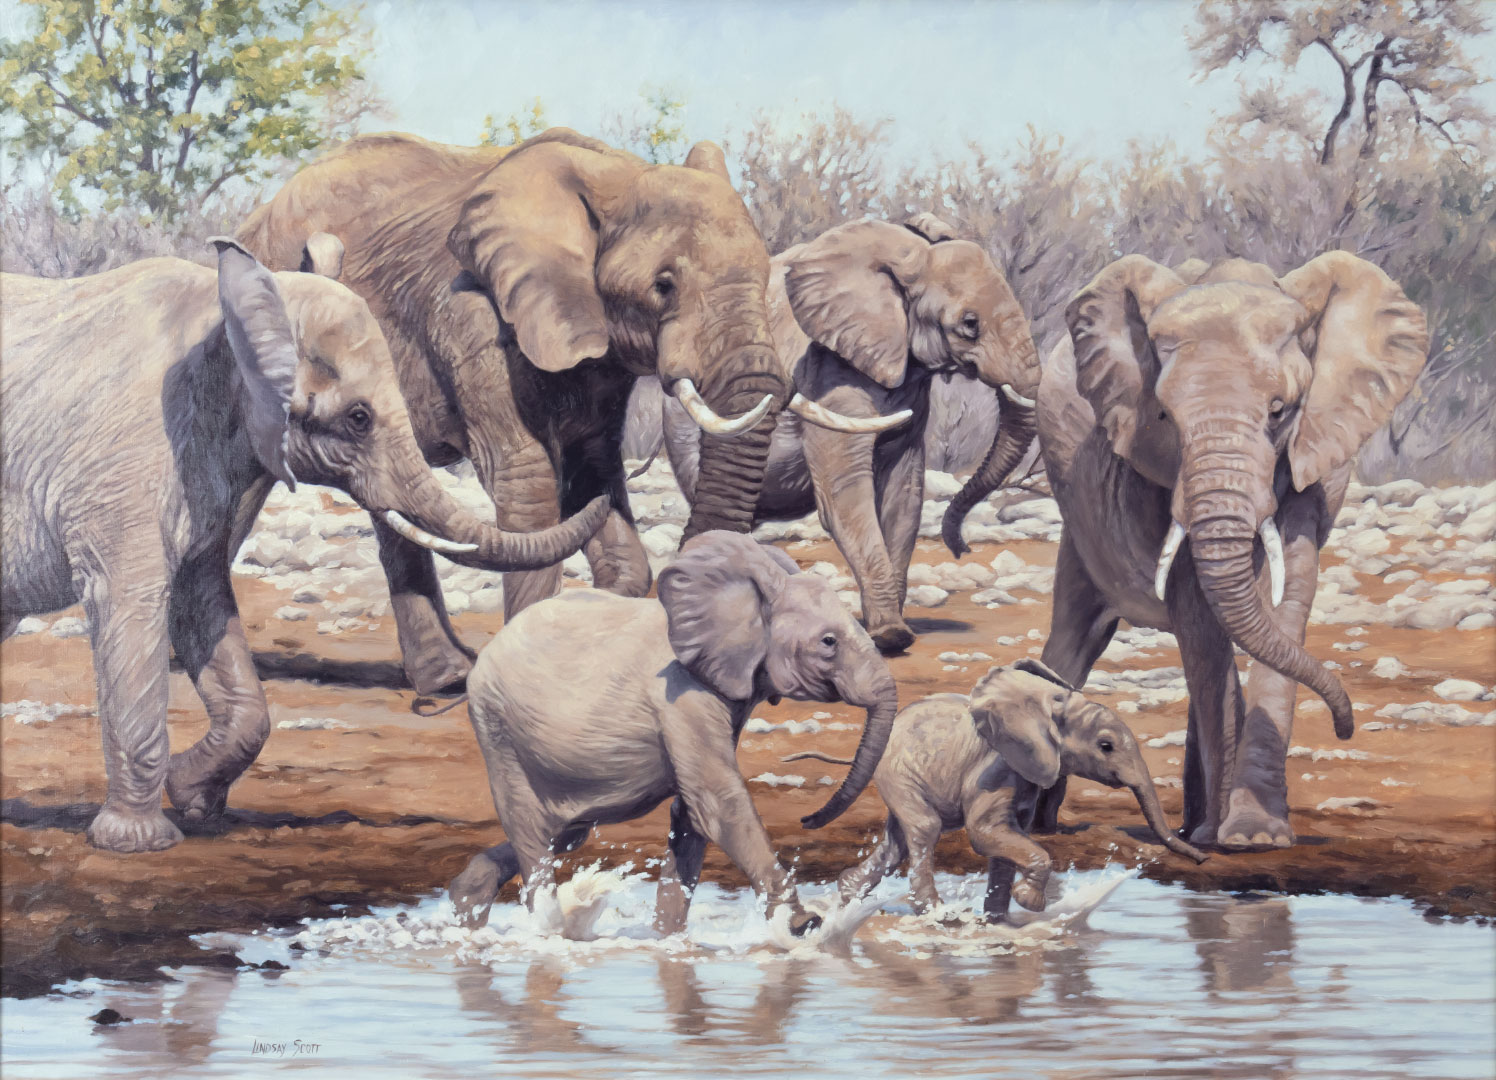 LINDSAY SCOTT 1955 ELEPHANTS 3a94a6